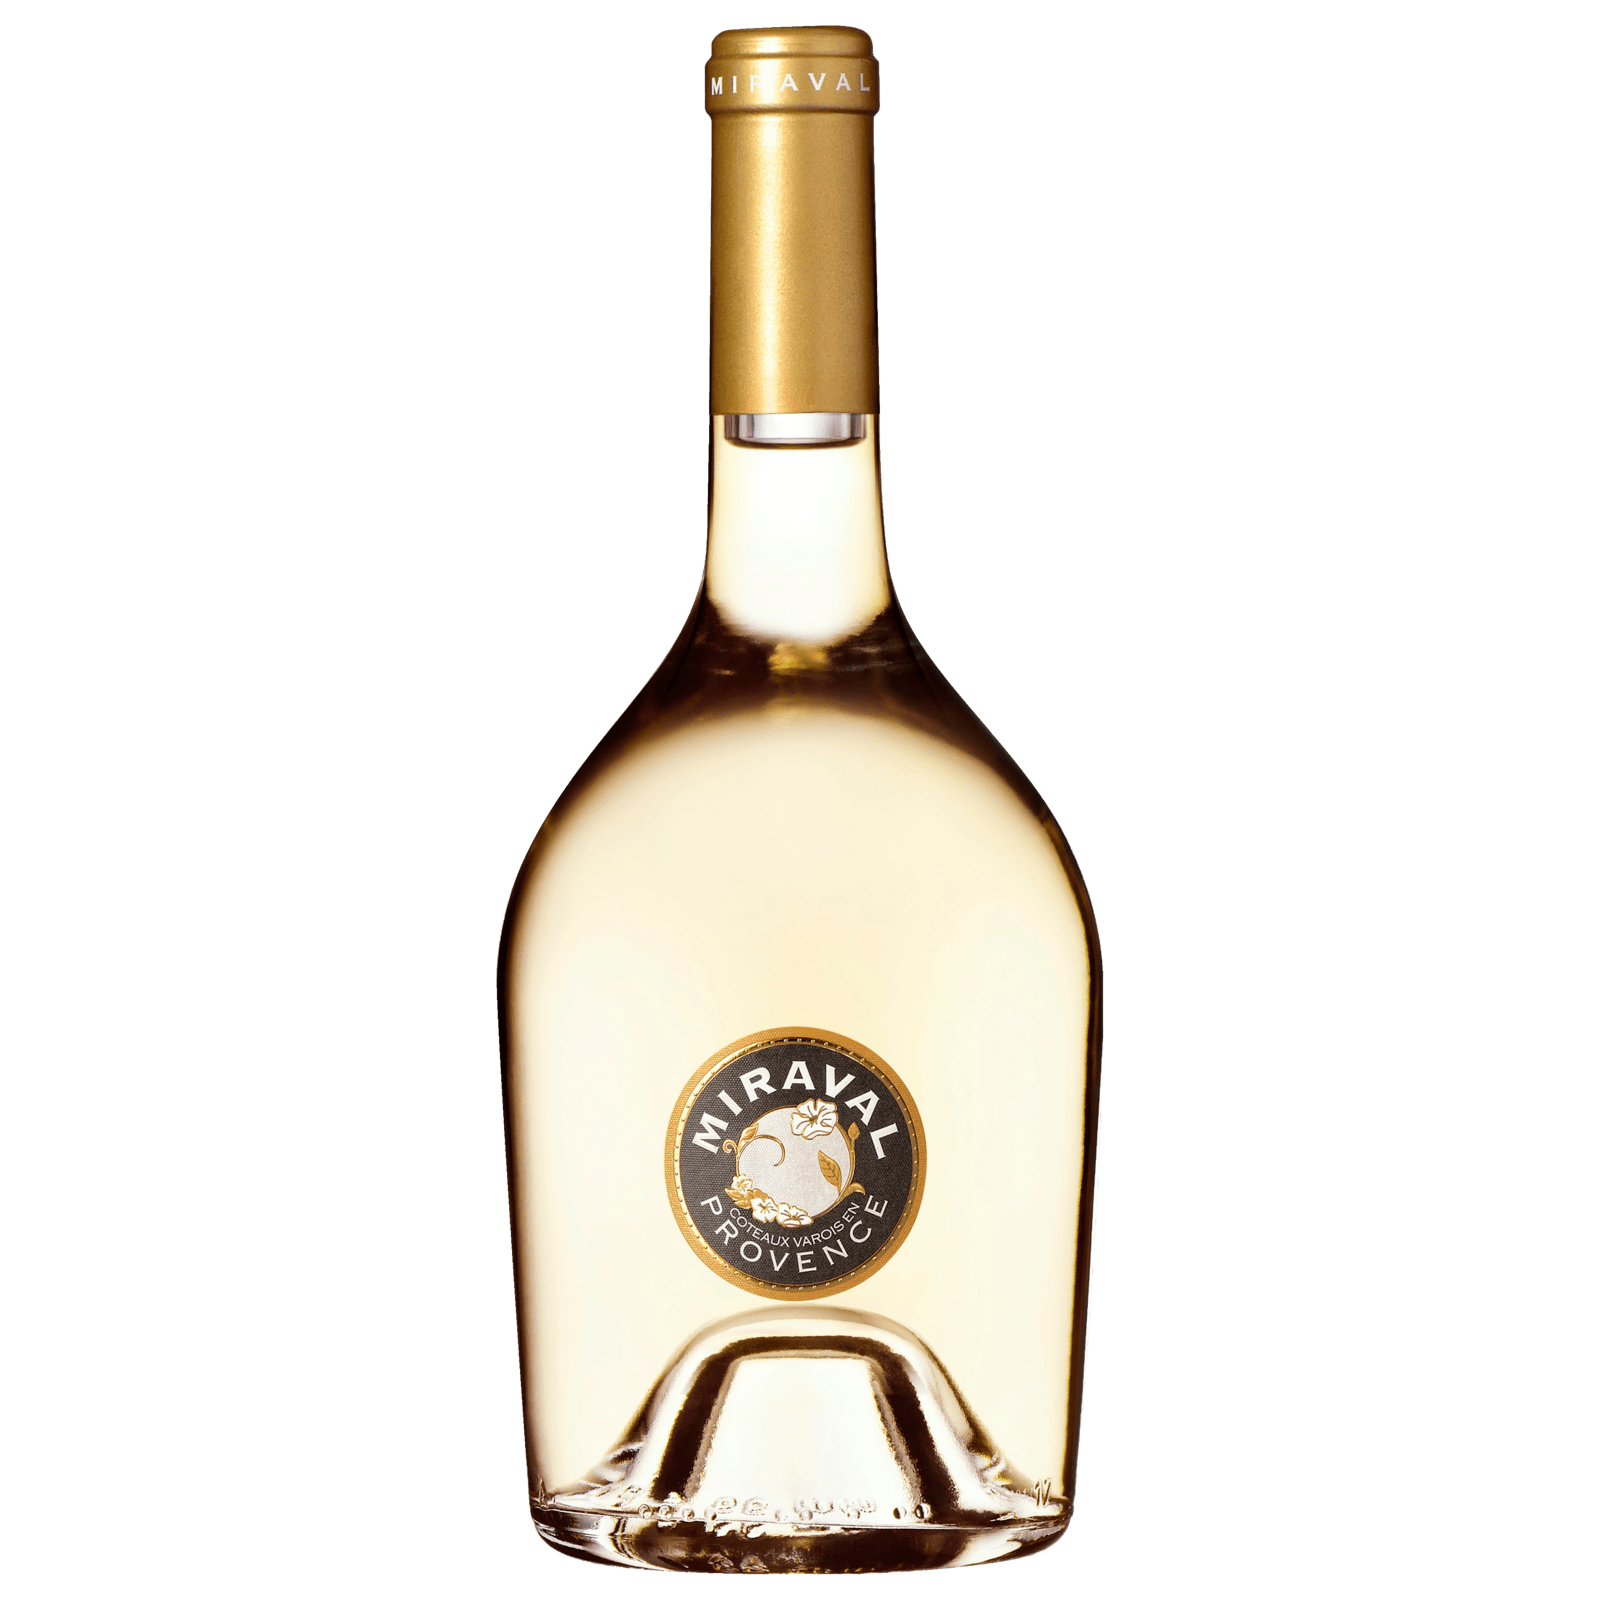 Irrepetible Manchuela DO trocken, Weißwein 2020 für 3,99€ von Lidl